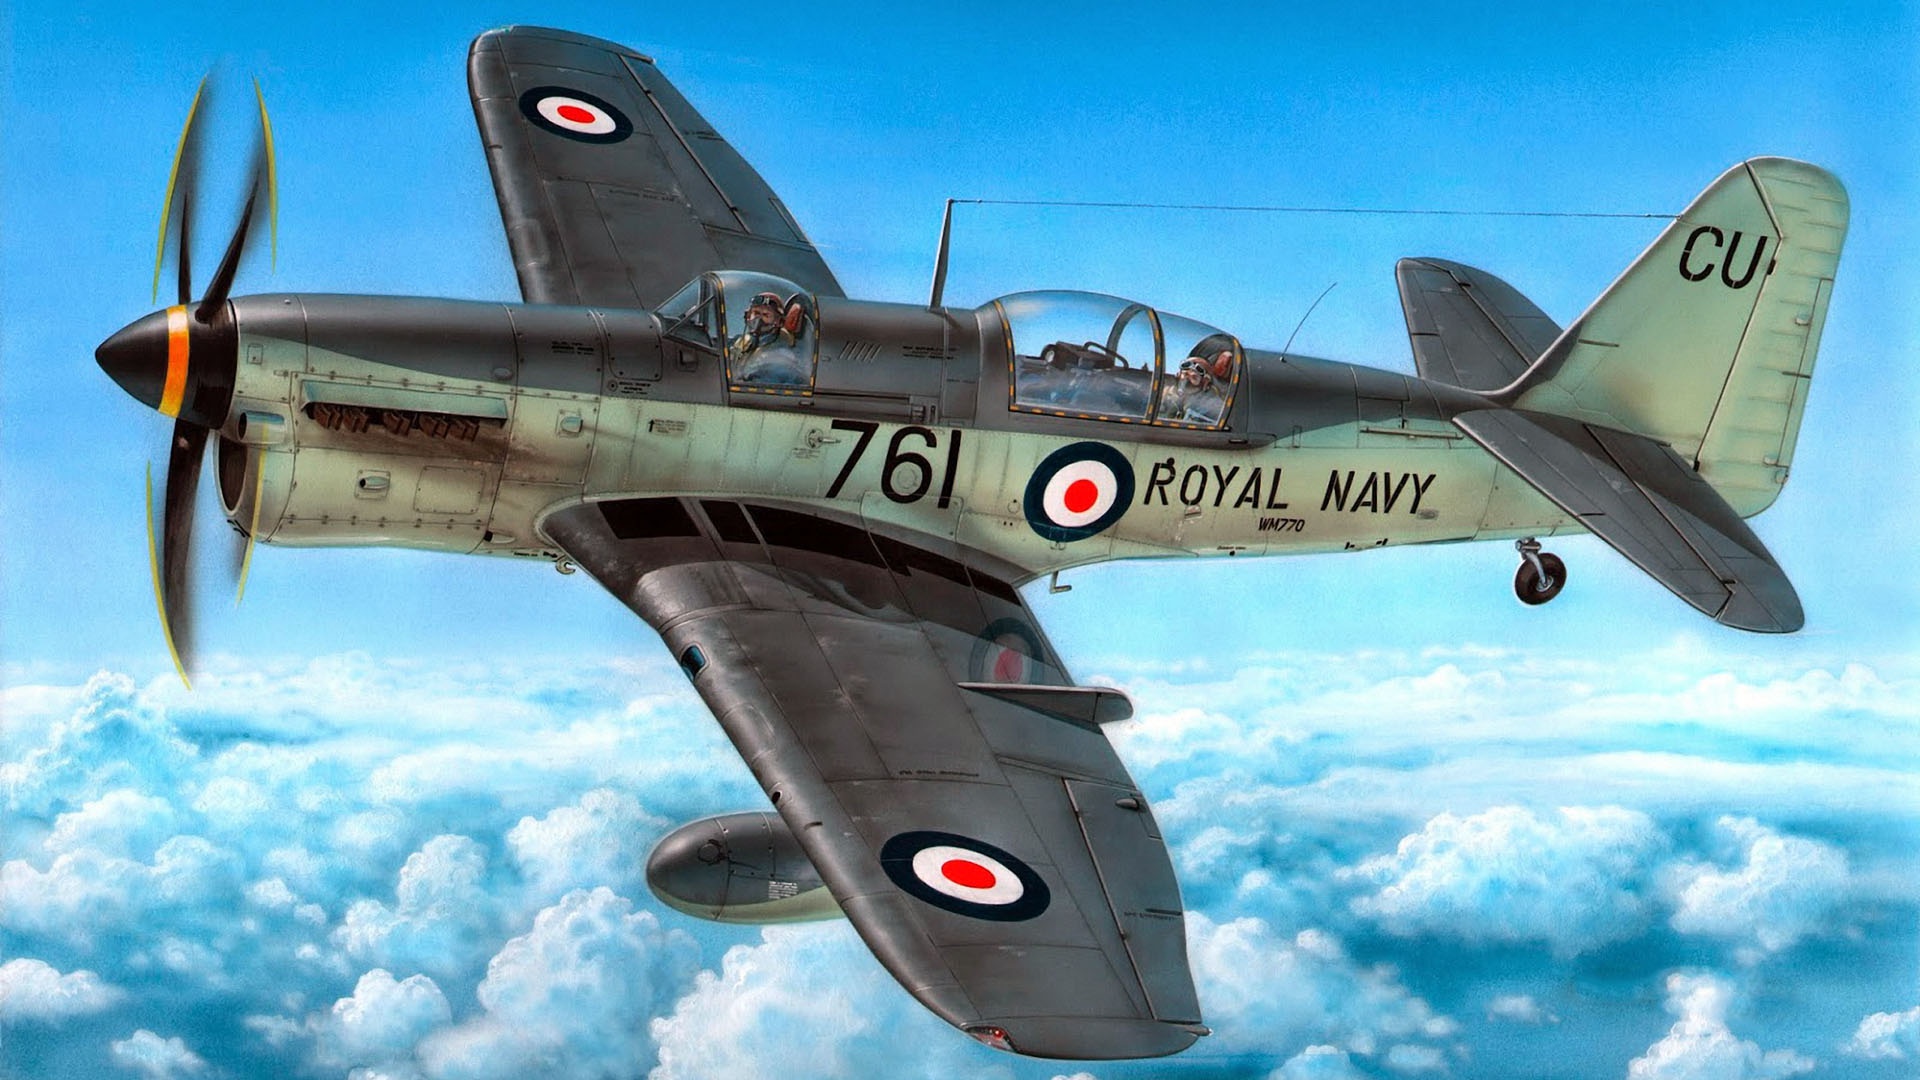 Artwork Military Aircraft Royal Navy Vehicle Aircraft 1920x1080